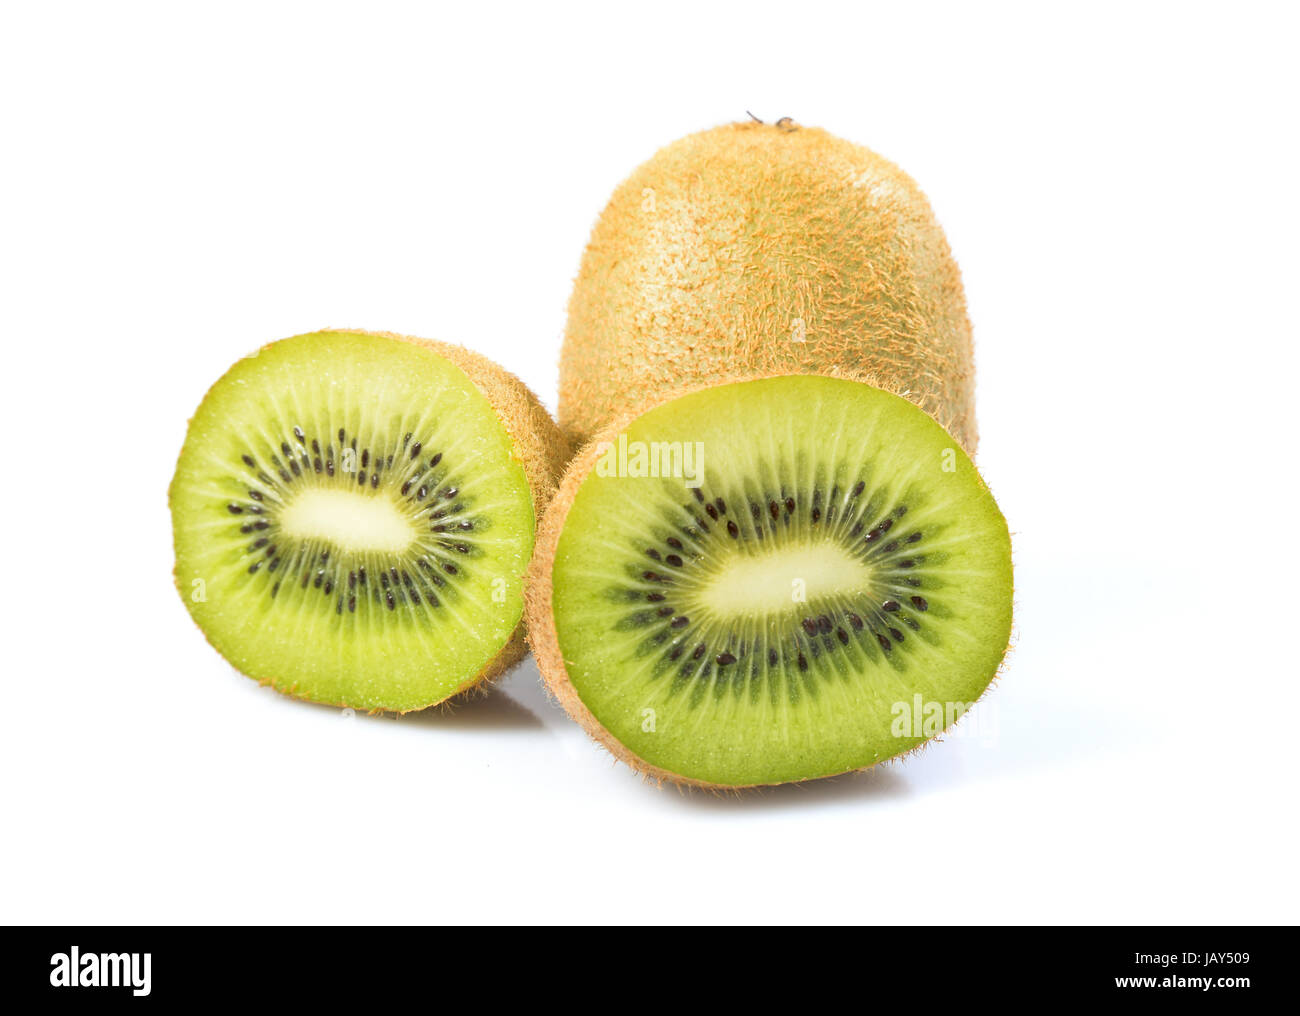 ripe kiwi isolated on a white background Stock Photo